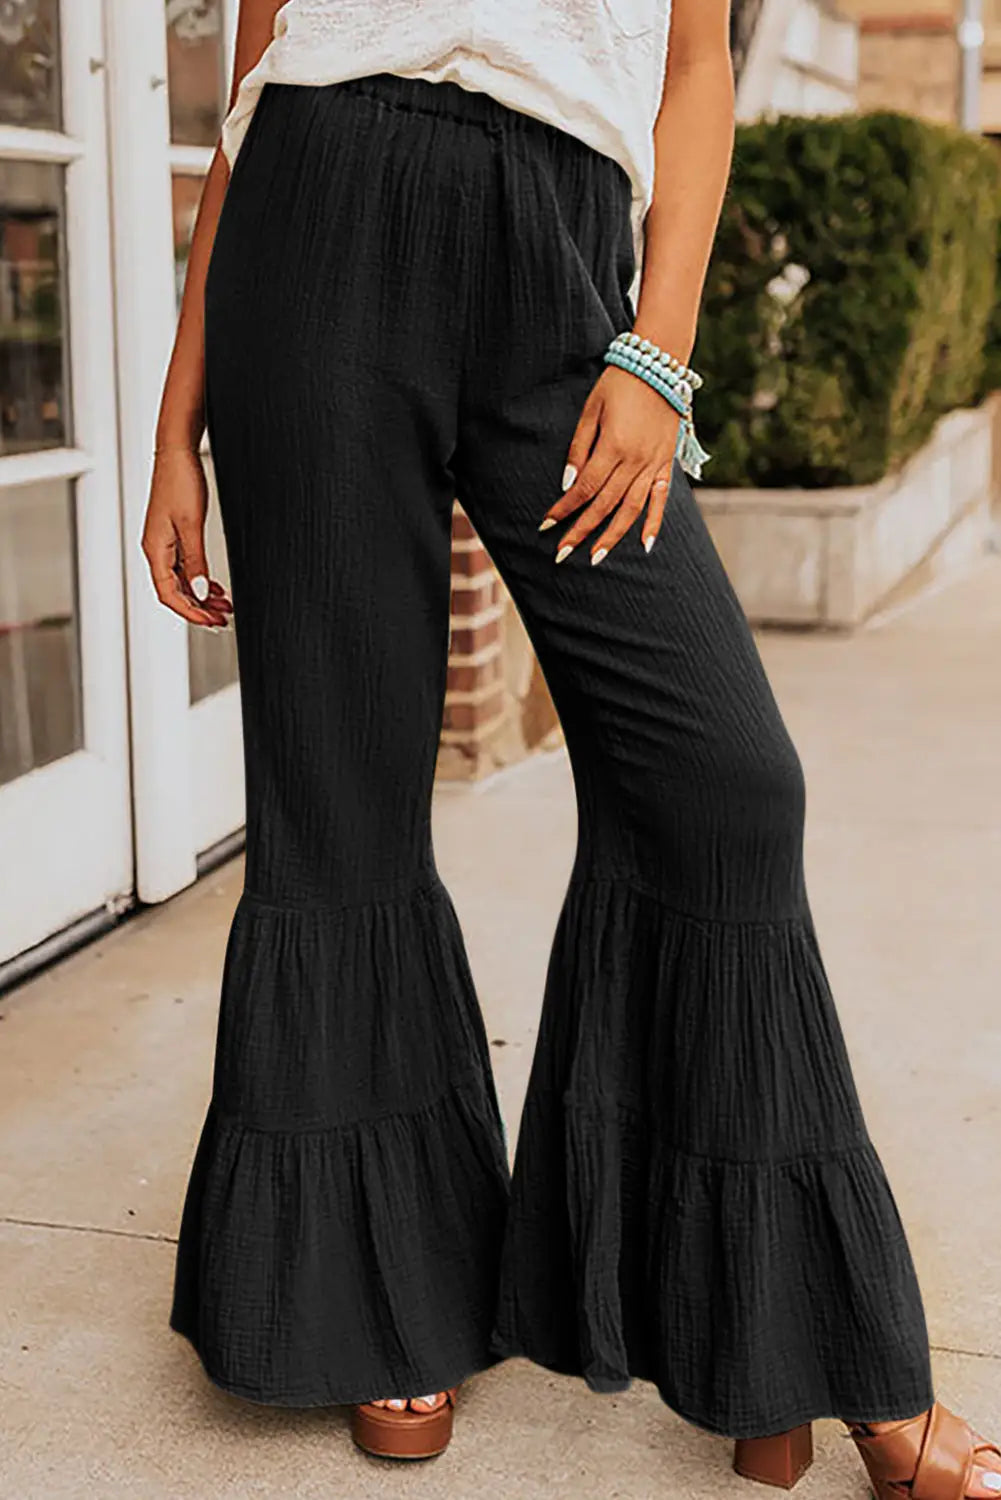 Black textured high waist ruffled bell bottom pants - s / 100% cotton - wide leg